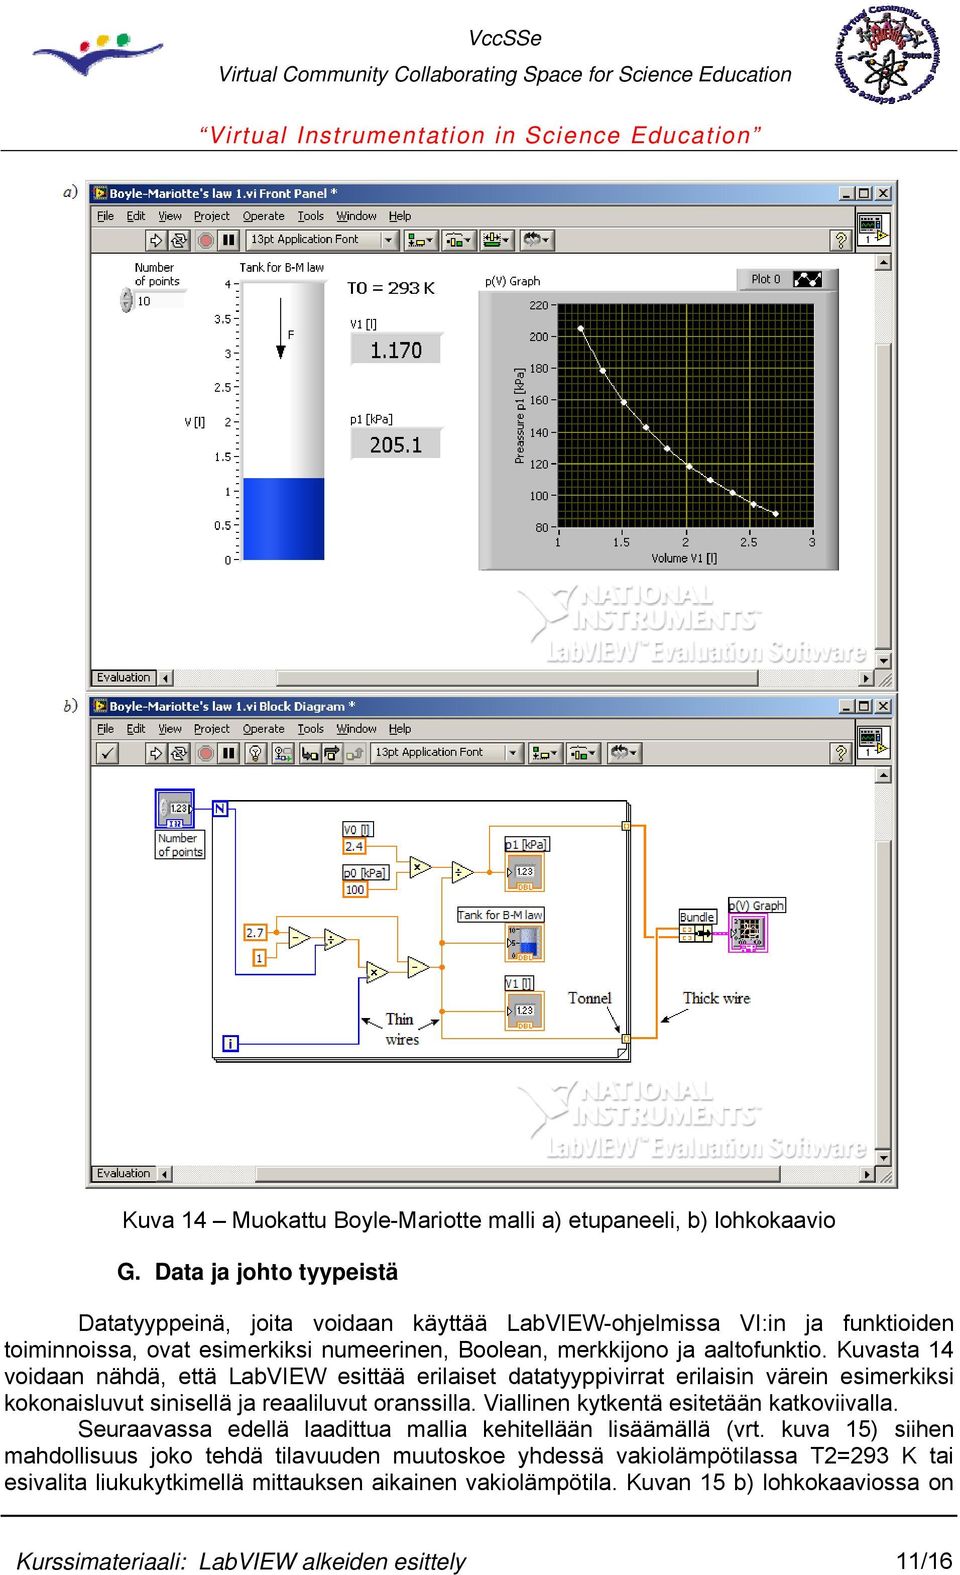 Kuvasta 14 voidaan nähdä, että LabVIEW esittää erilaiset datatyyppivirrat erilaisin värein esimerkiksi kokonaisluvut sinisellä ja reaaliluvut oranssilla.